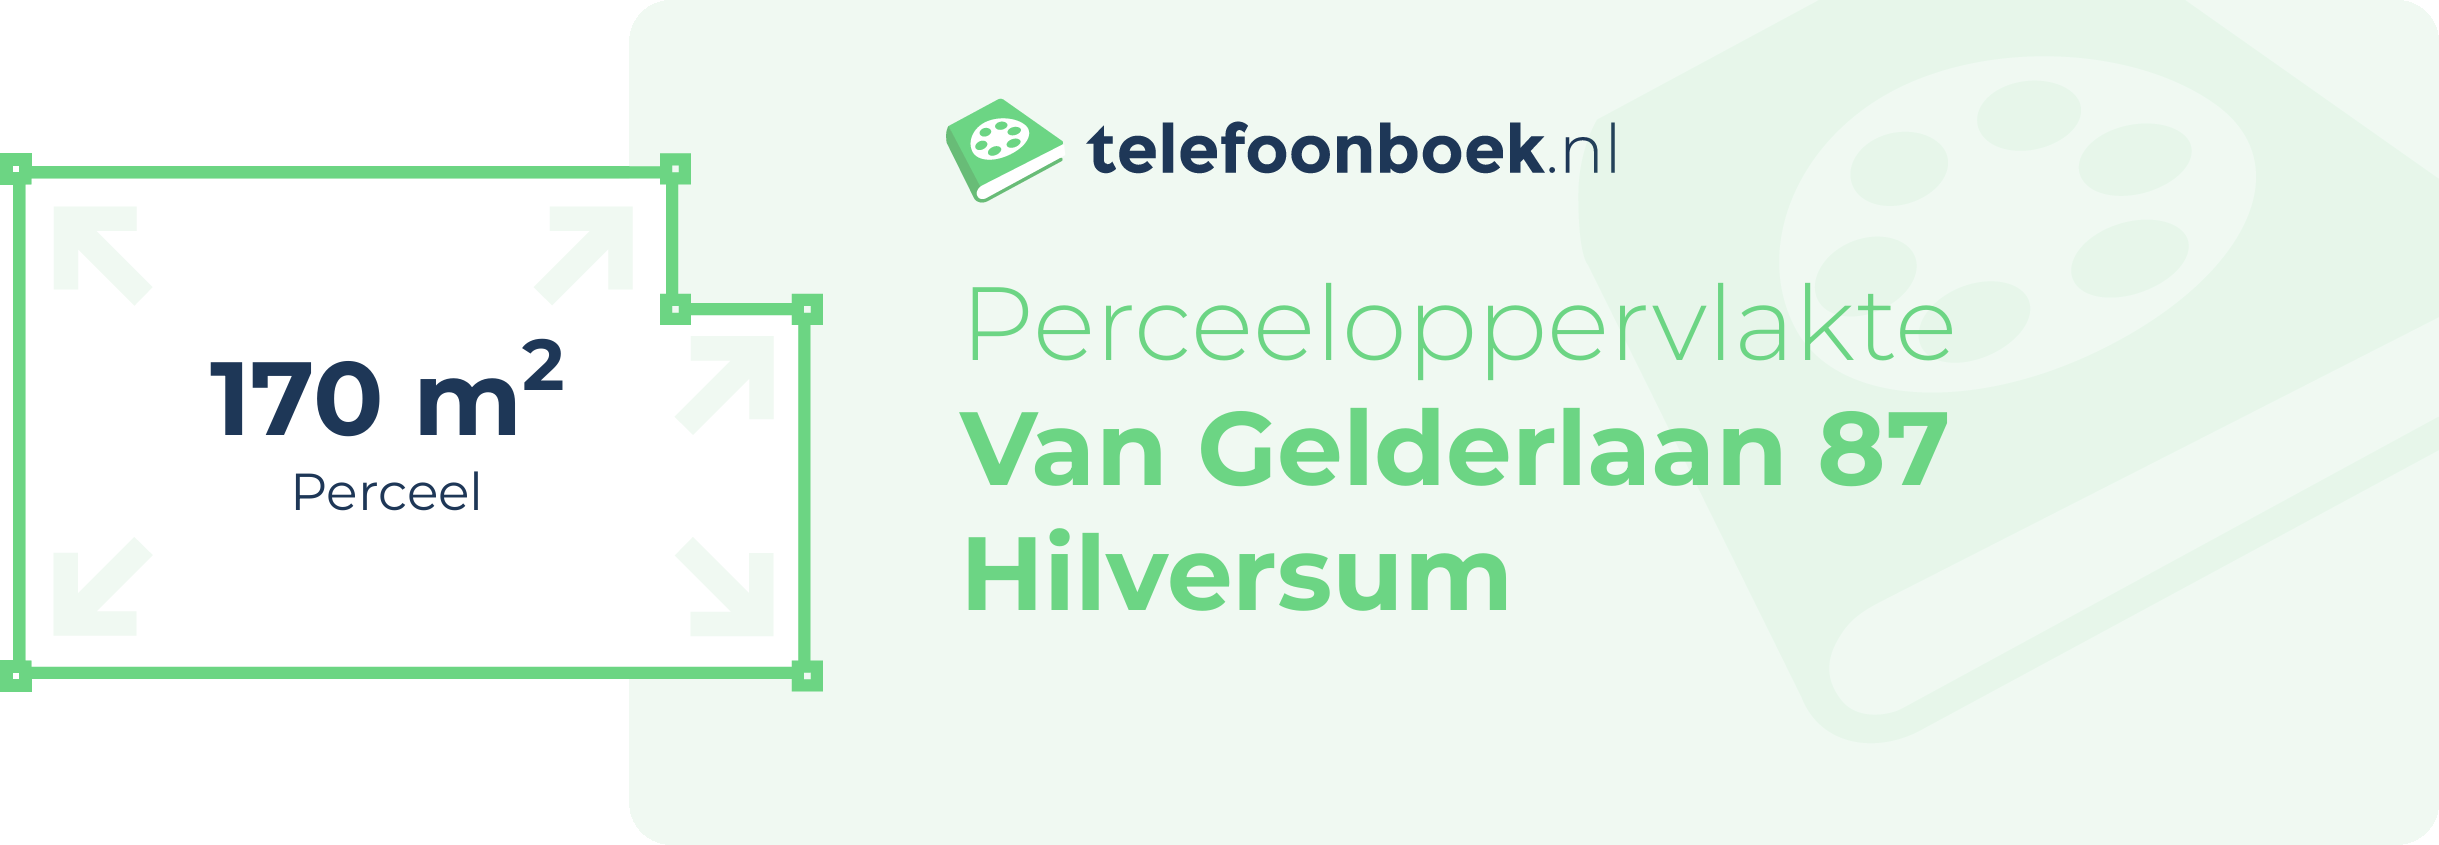 Perceeloppervlakte Van Gelderlaan 87 Hilversum